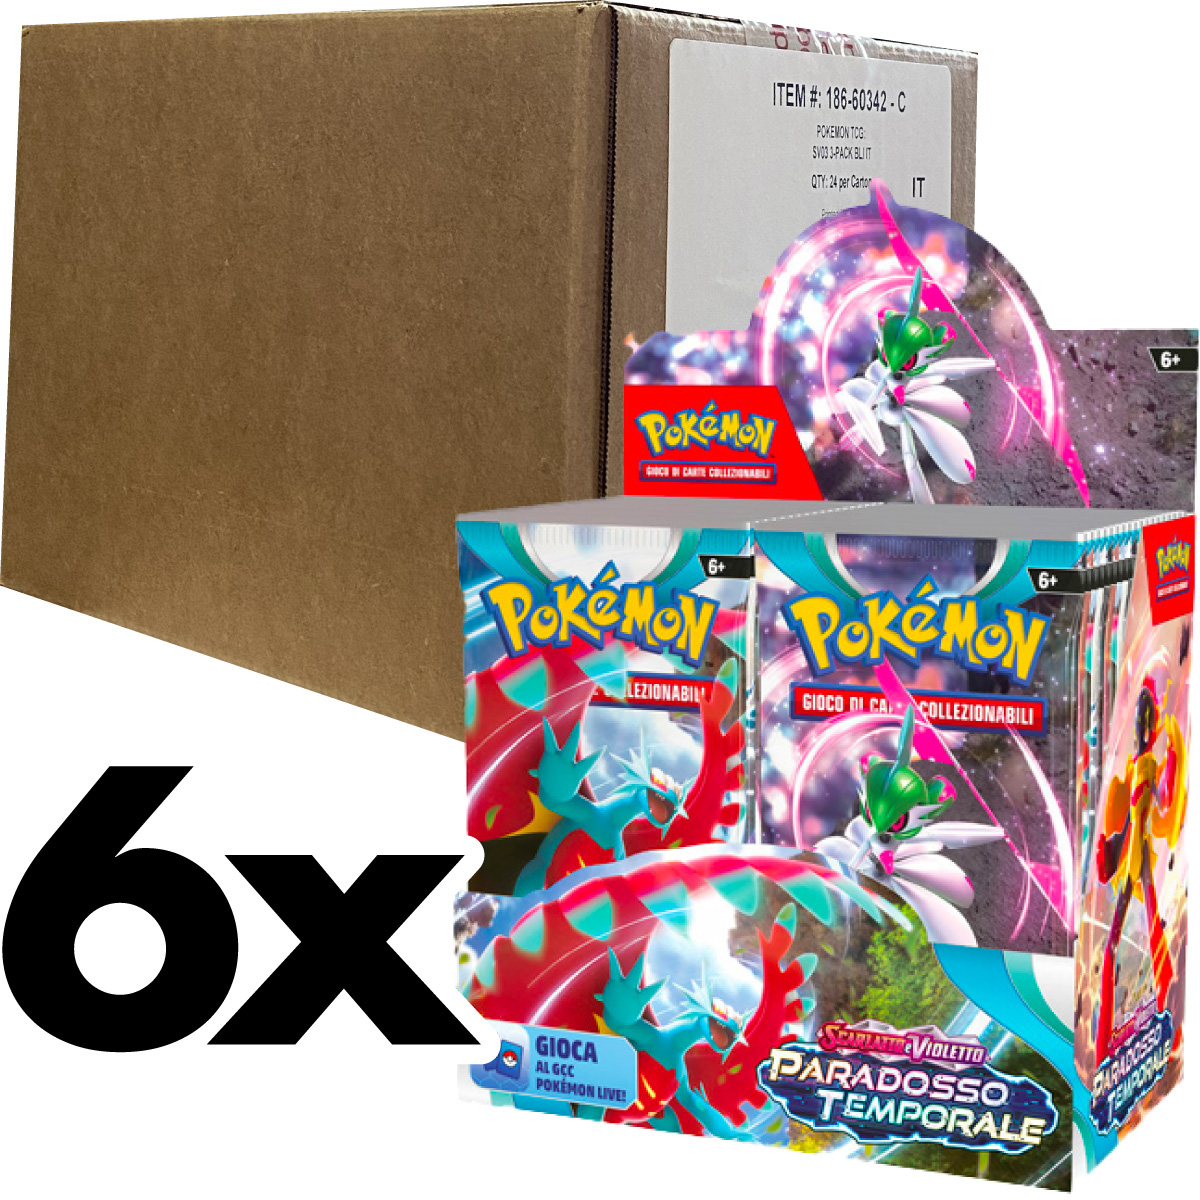 pokemon gcc - pokemon scarlatto e violetto paradosso temporale - case sigillato 6x box da 36 bustine (ita) - pk62349/pk60349